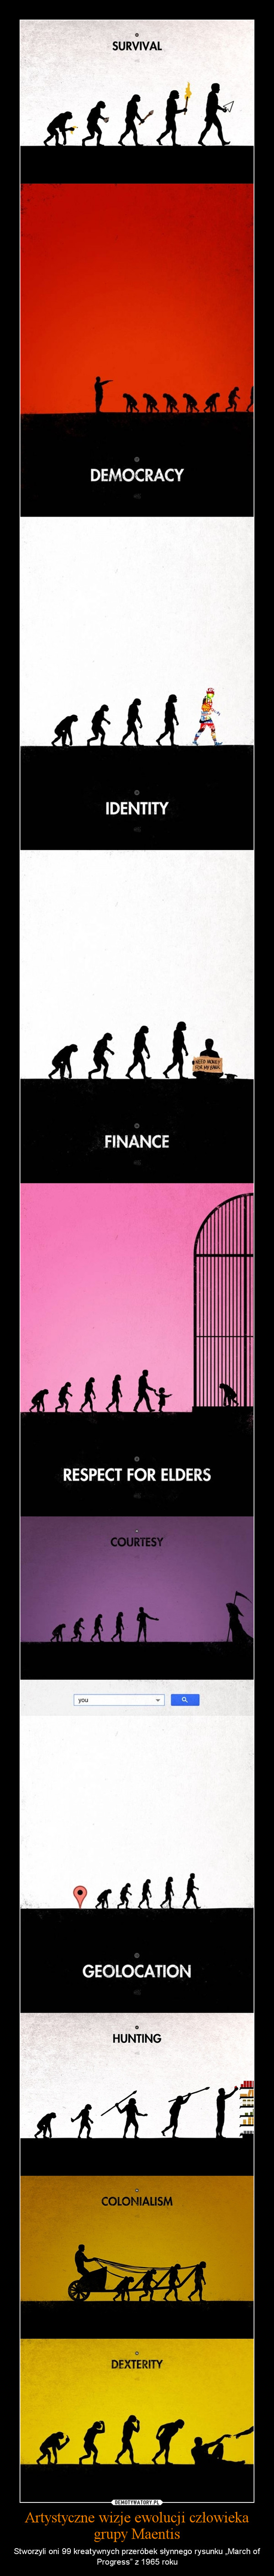 Artystyczne wizje ewolucji człowieka grupy Maentis – Stworzyli oni 99 kreatywnych przeróbek słynnego rysunku „March of Progress” z 1965 roku 